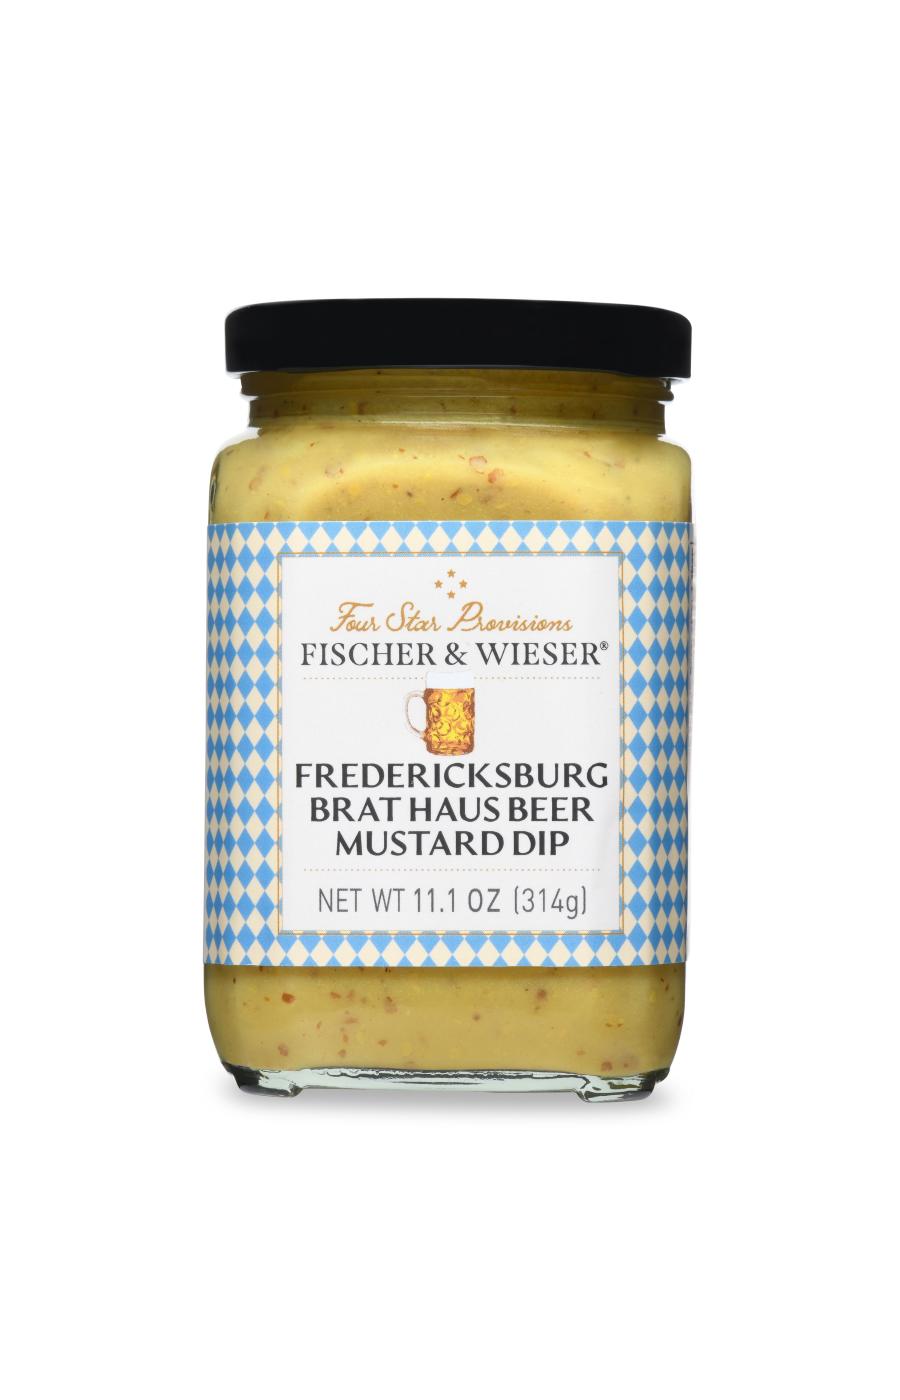 Fischer & Wieser Four Star Provisions Fredericksburg Brat Haus Beer Mustard Dip; image 1 of 3